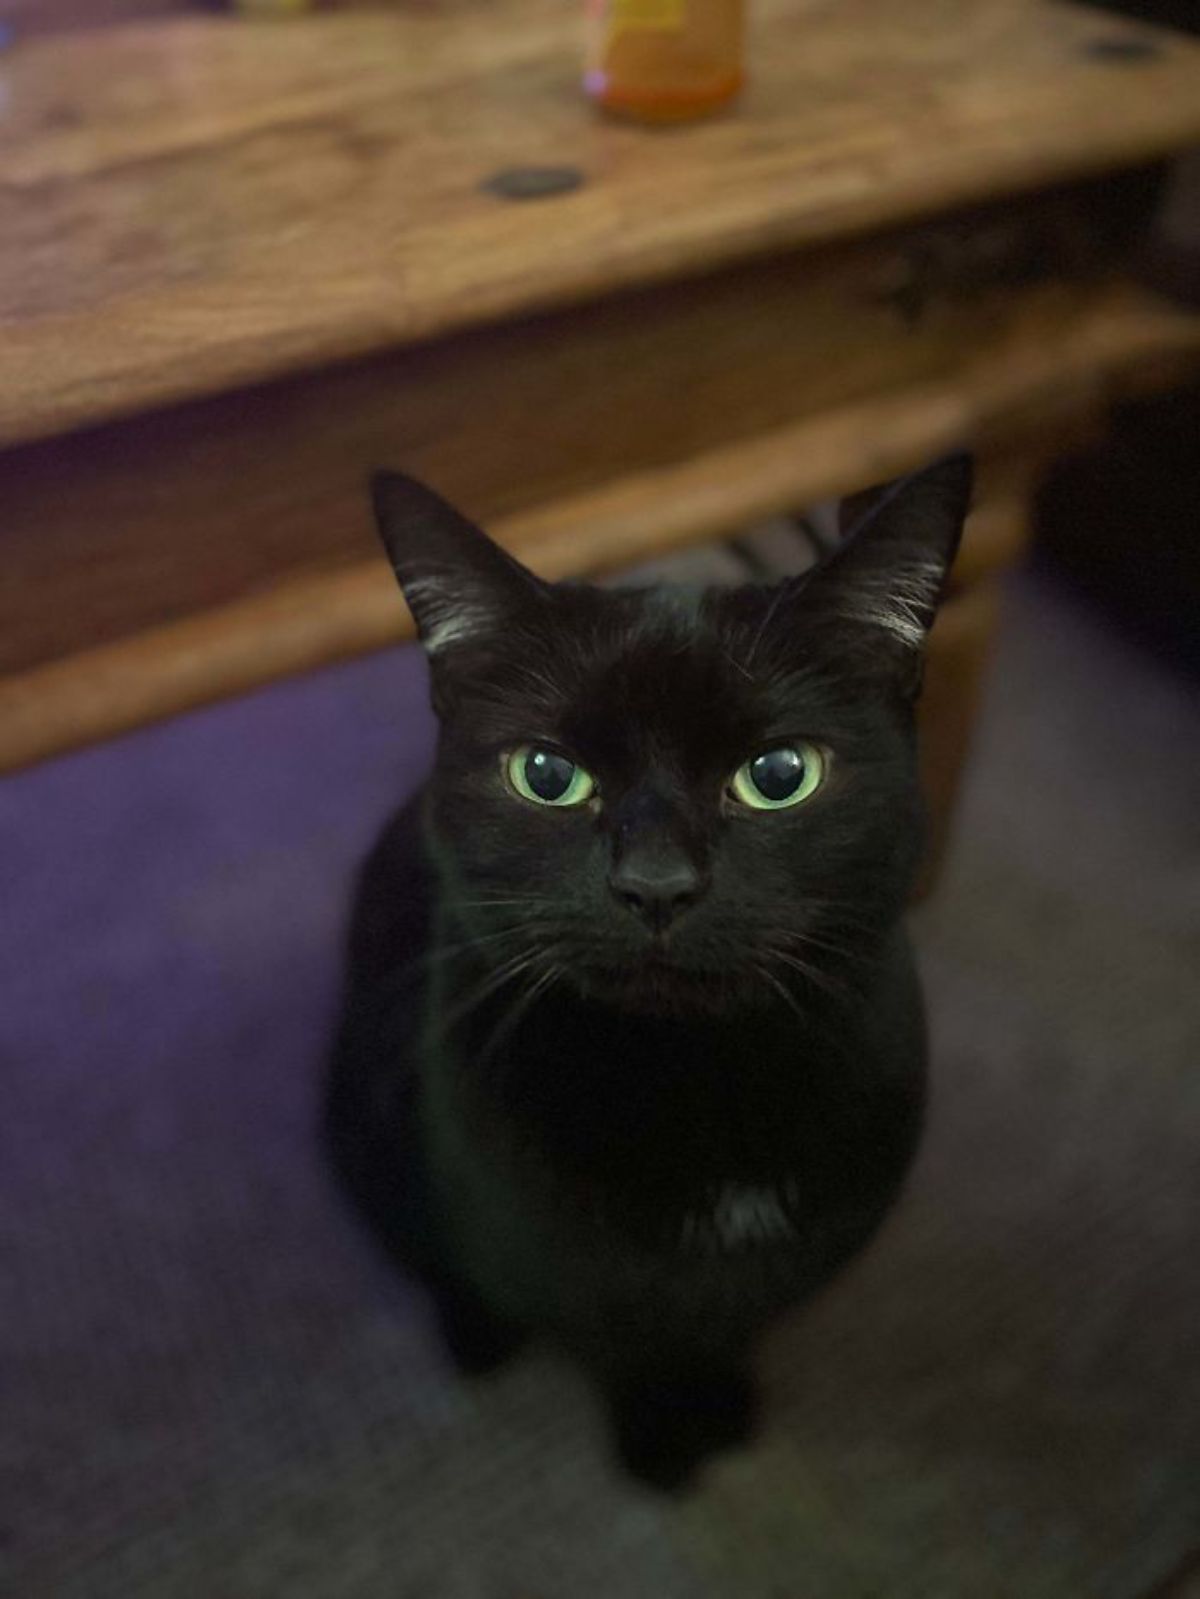 black cat sitting on purple floor